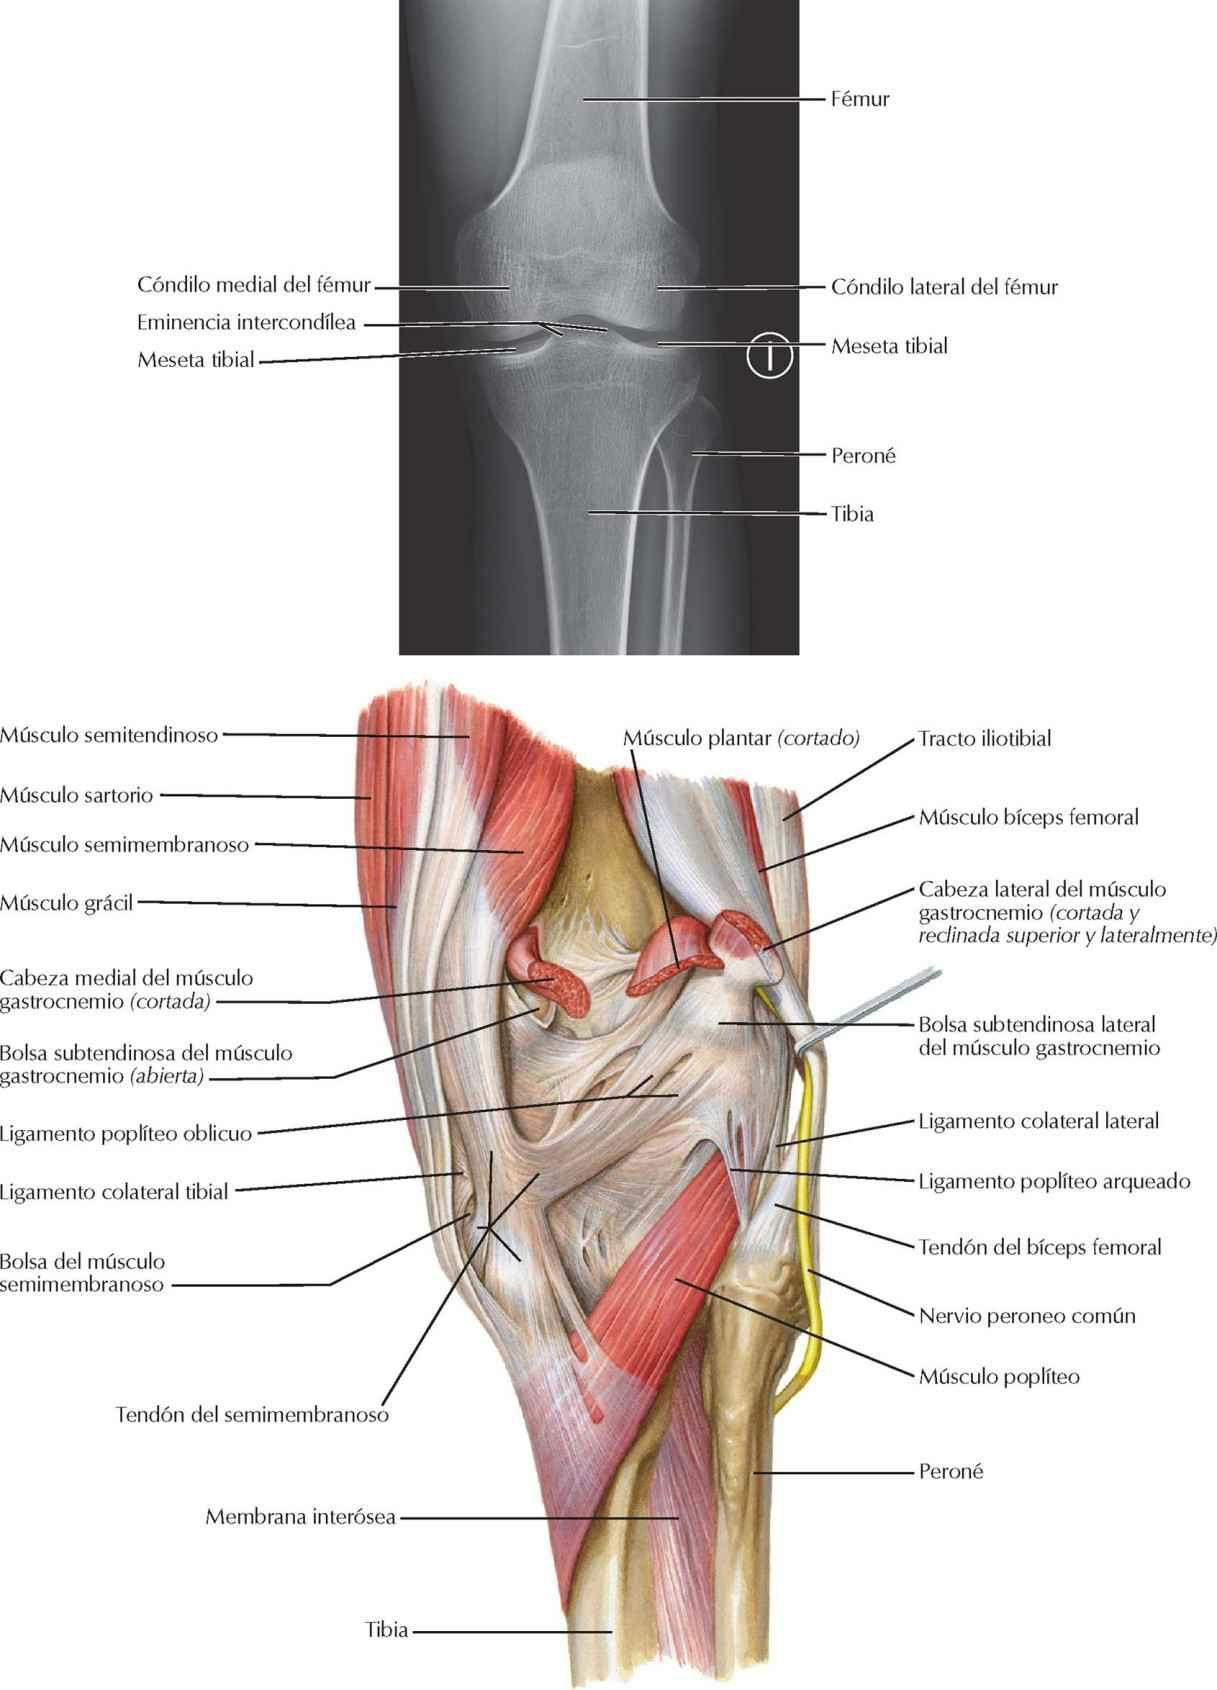 Rodilla: radiografía anteroposterior y visión posterior